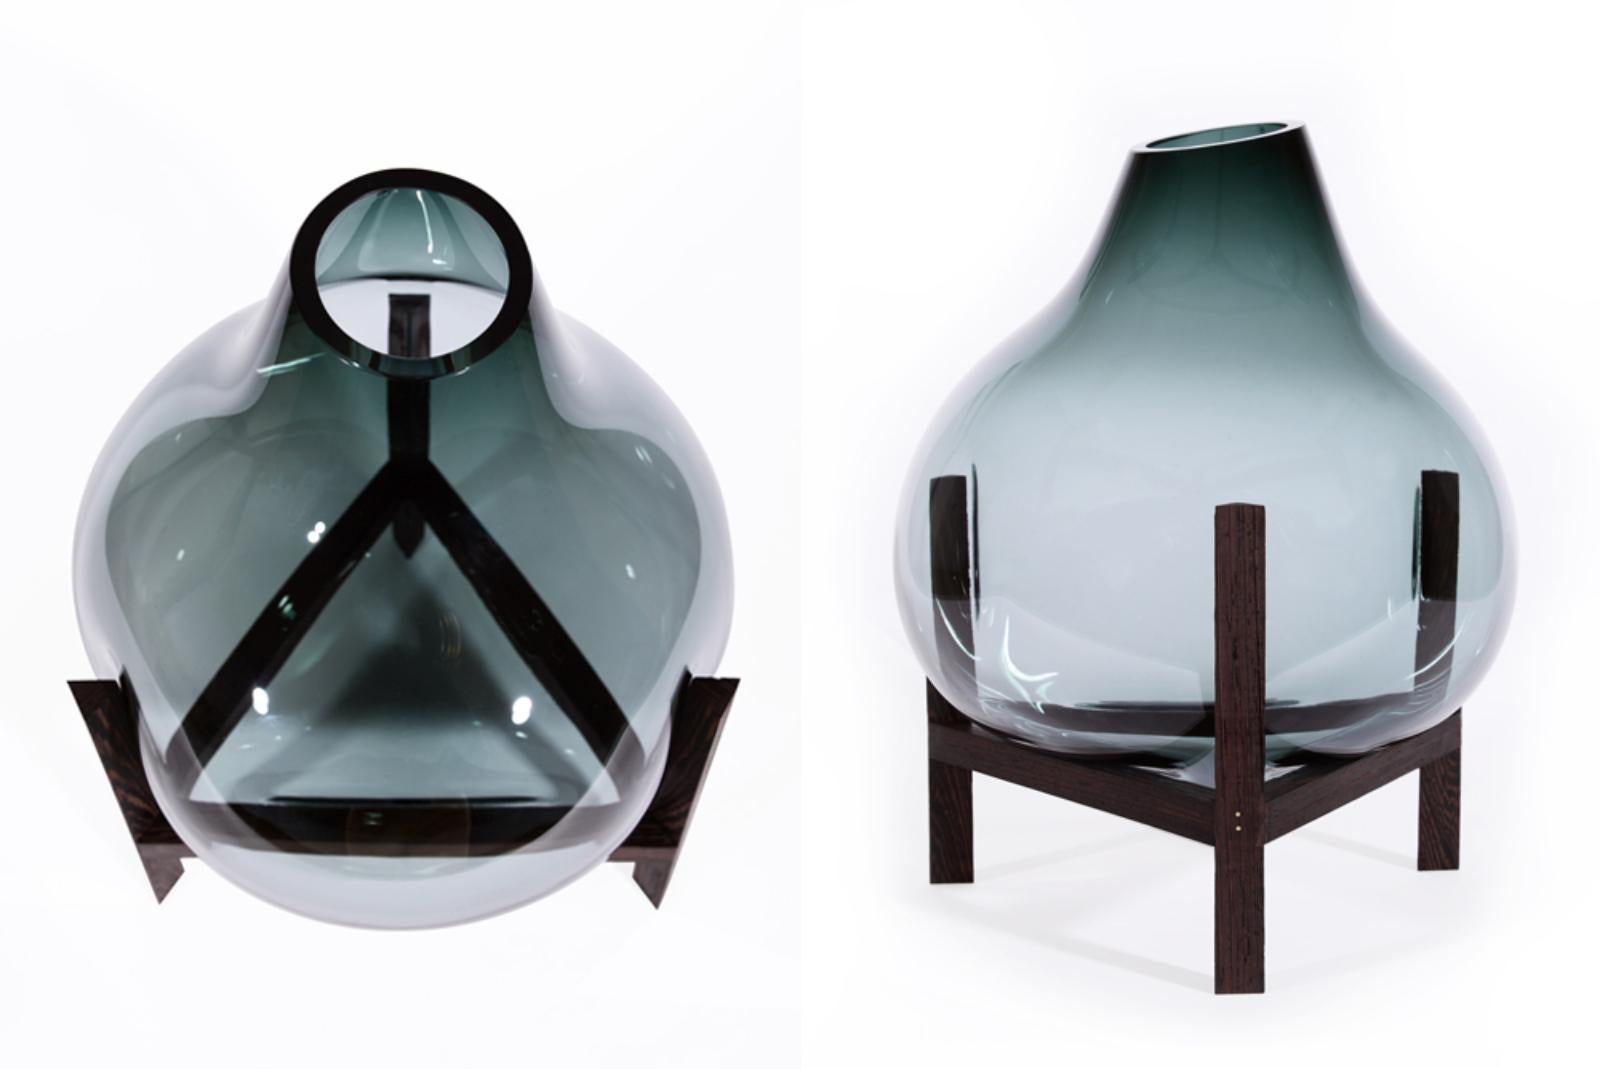 Other Set Of 4 Round Square Grey Triangular Vase by Studio Thier & van Daalen